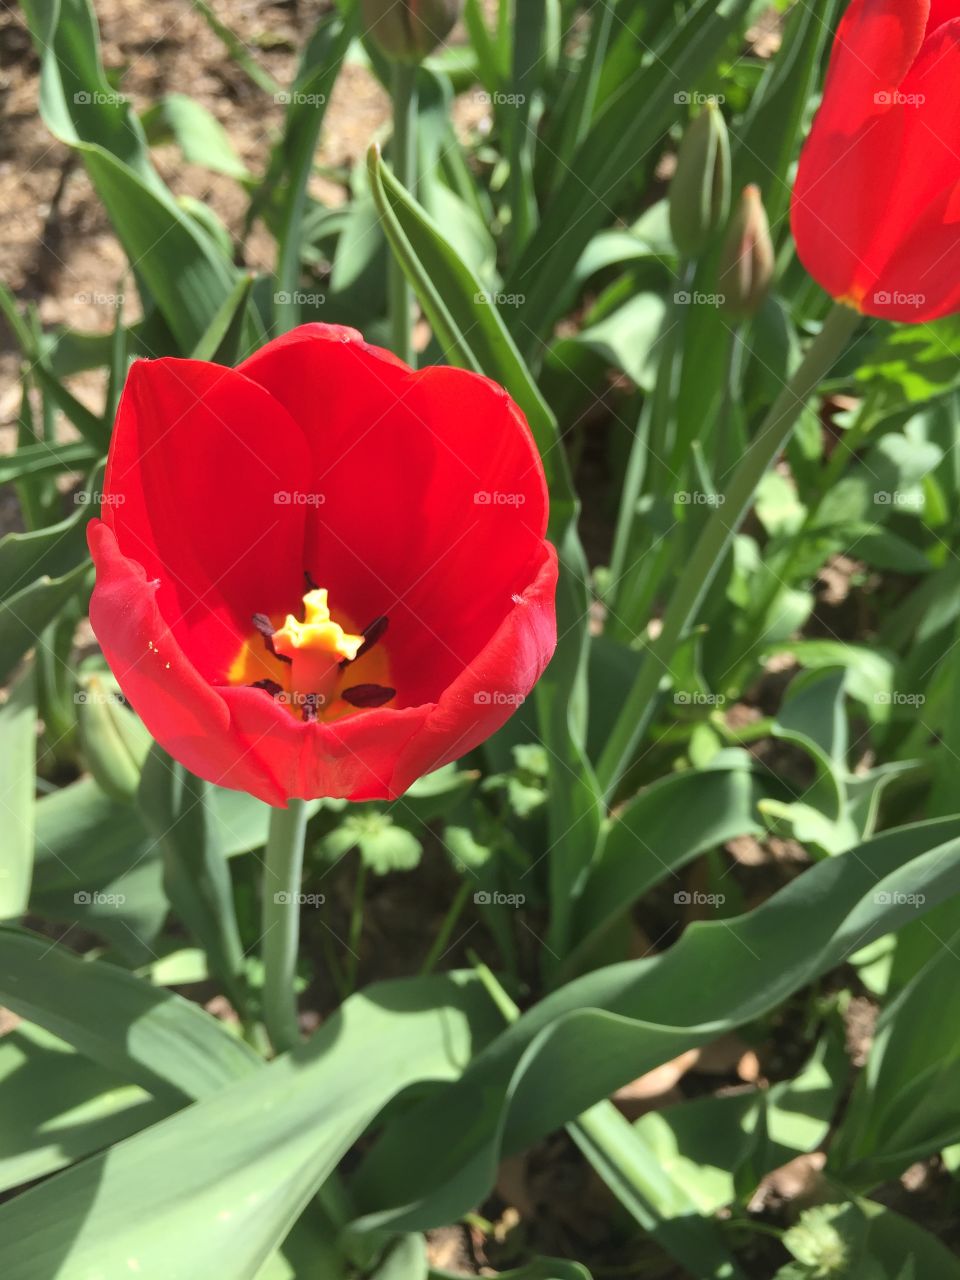 Red Tulip

